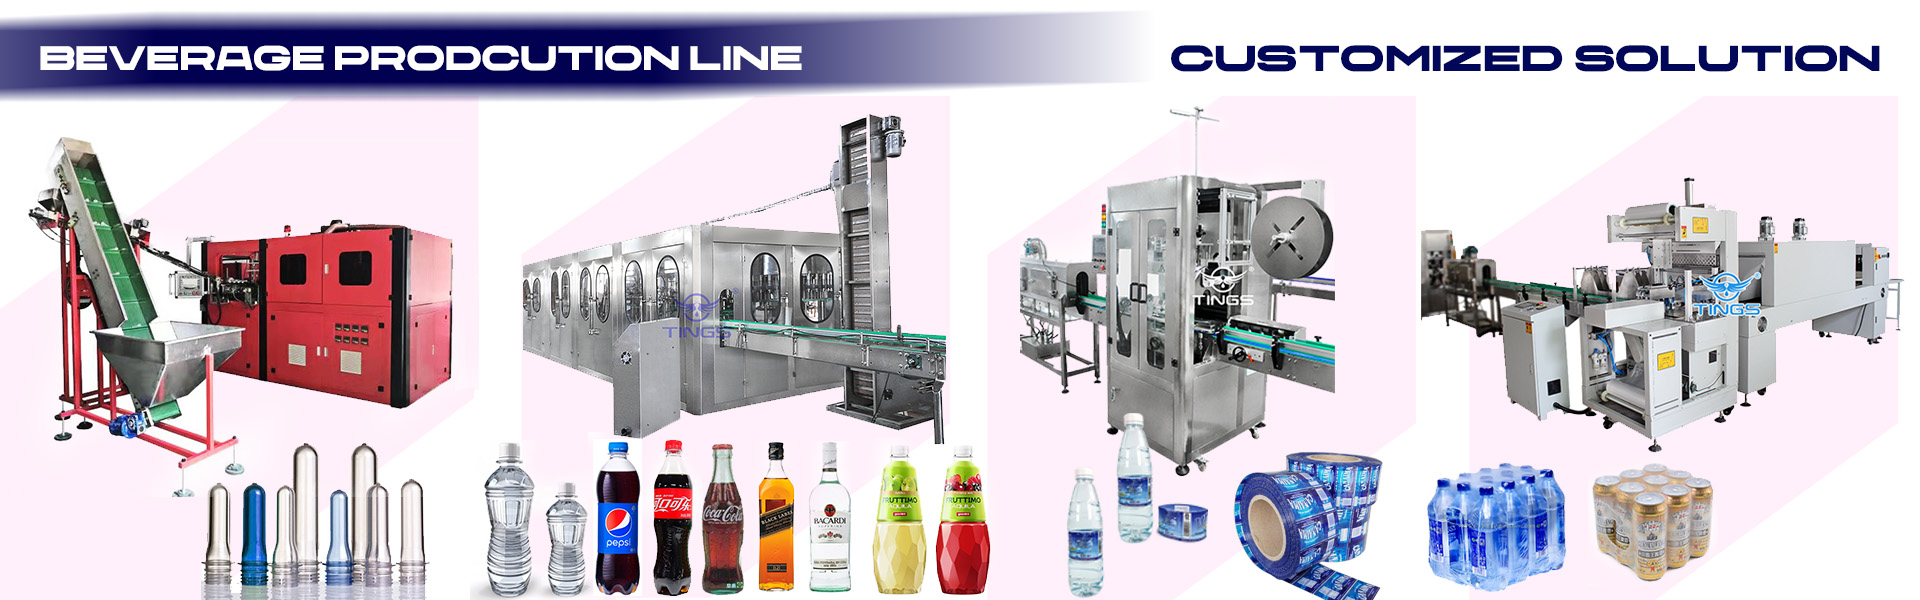 Beverage Bottling Production Line